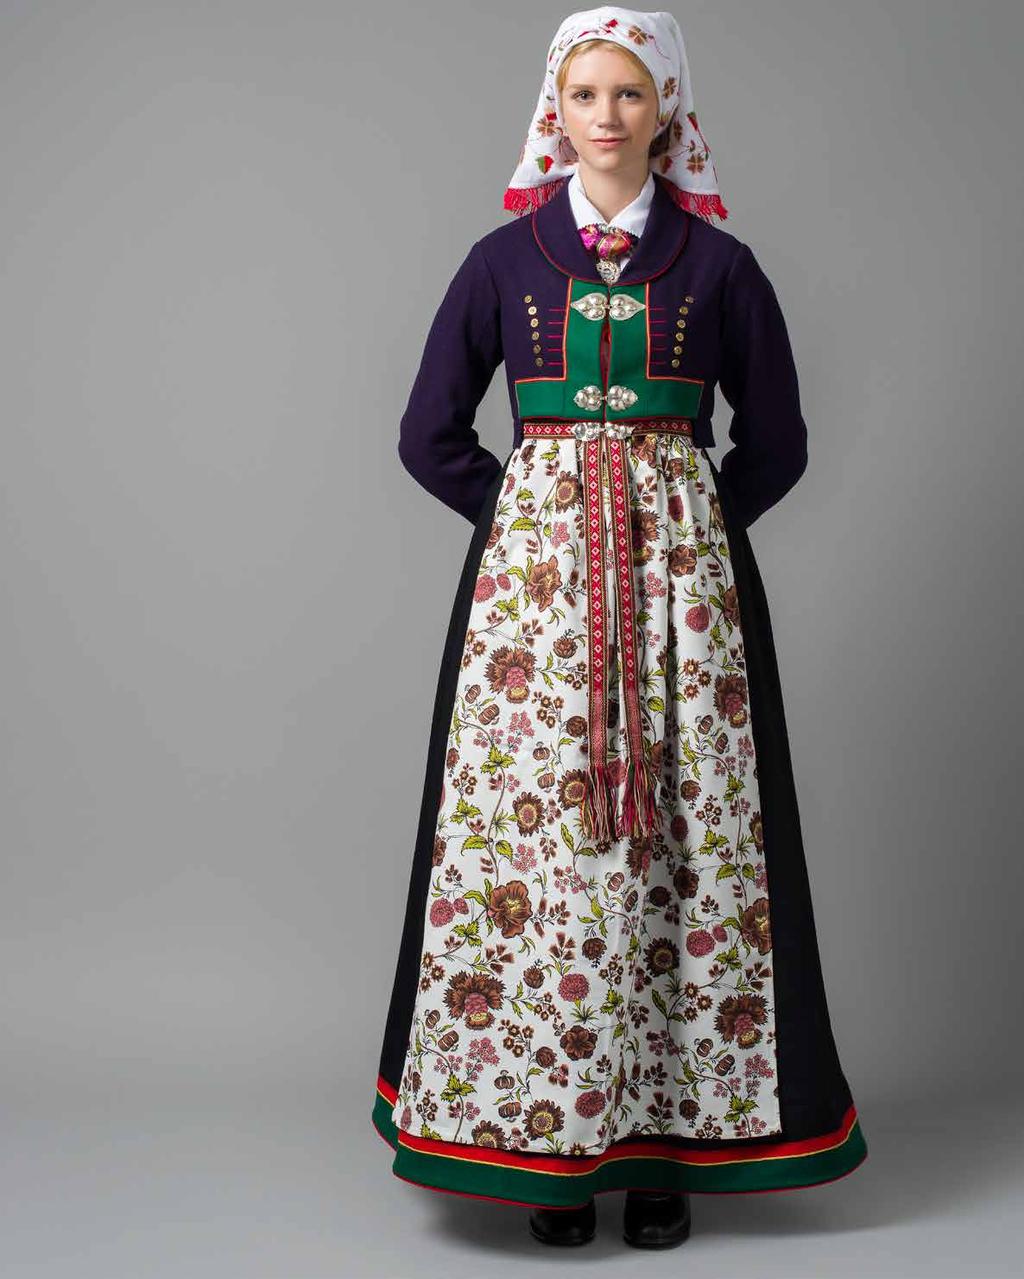 Denne er rekonstruert fra den gamle trøya fra 1865, både i farge, snitt og knapper. Alle trøyene har klede i rødt og grønt og håndbroderte detaljer.